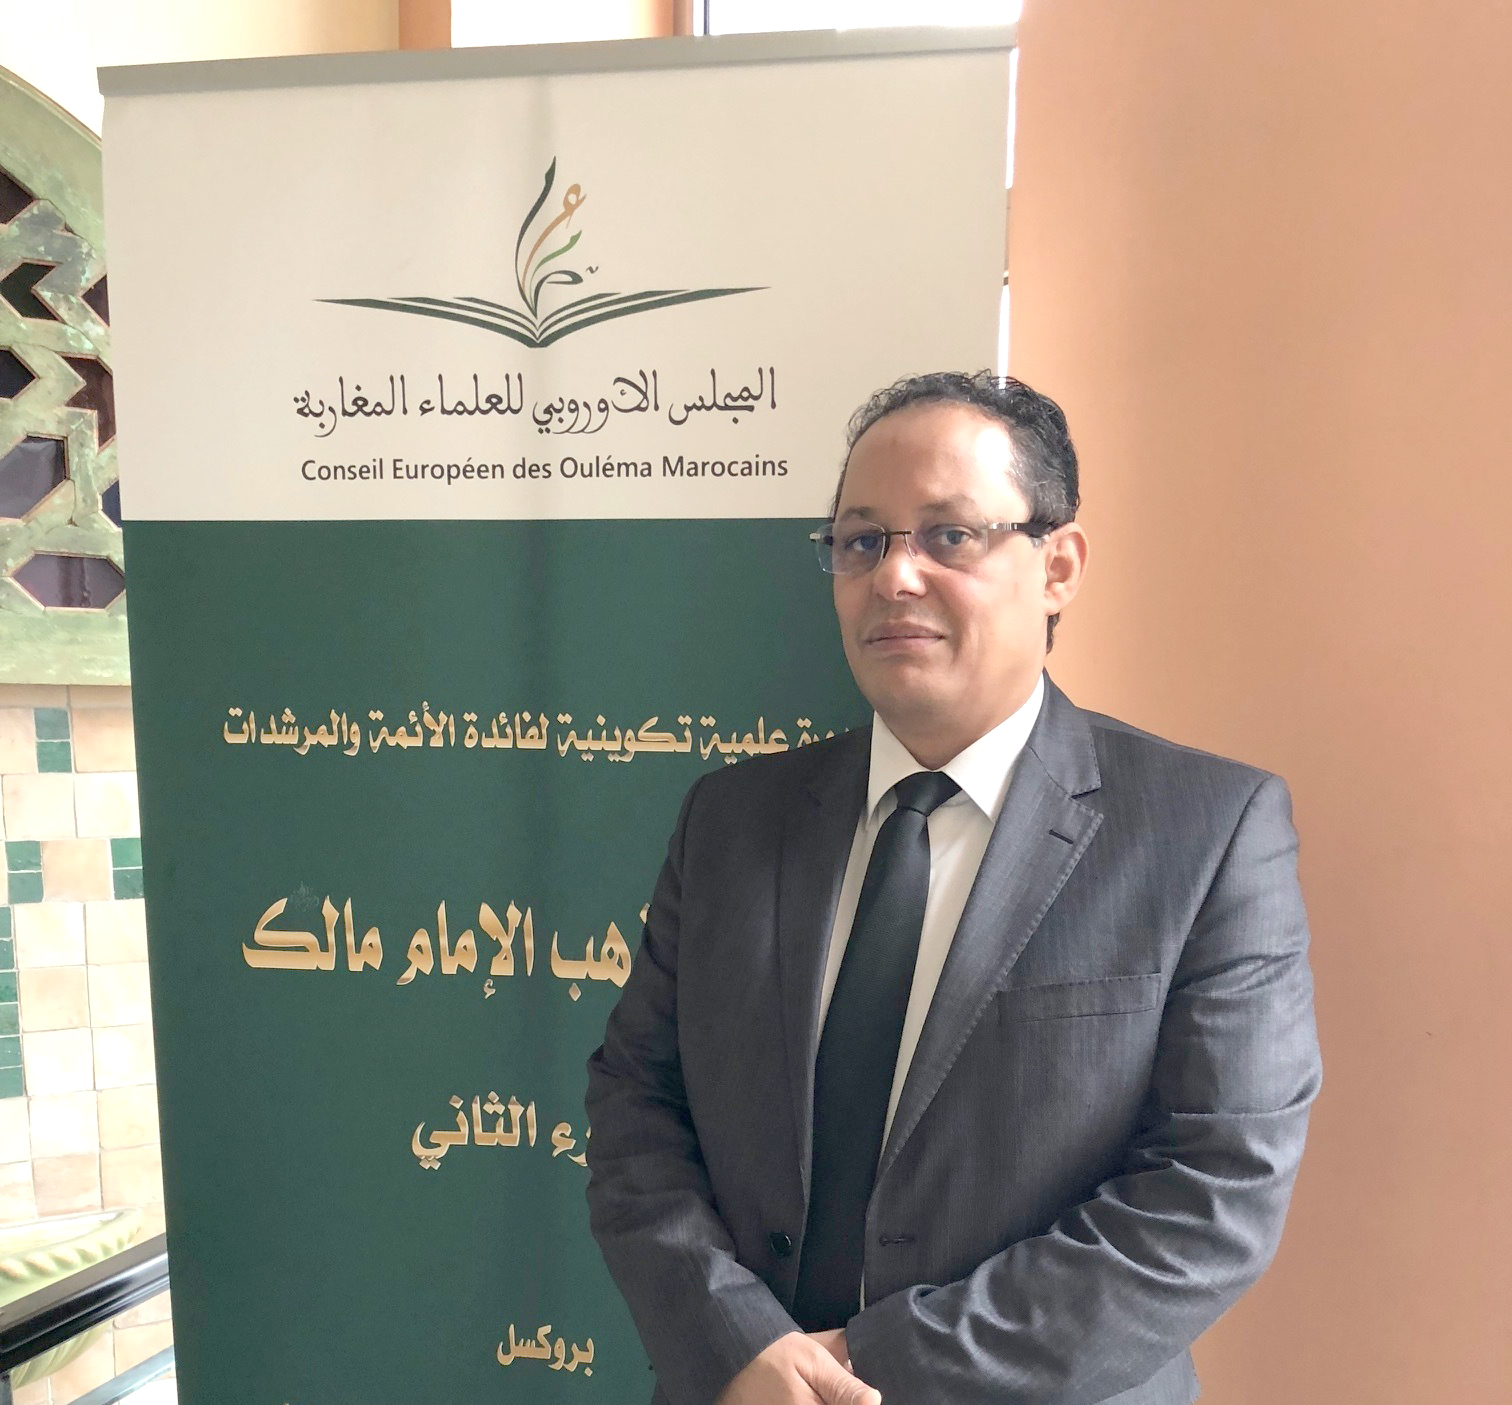 رئيس مجلس ادارة المجلس الاوروبي للعلماء المغاربة خالد حاجي